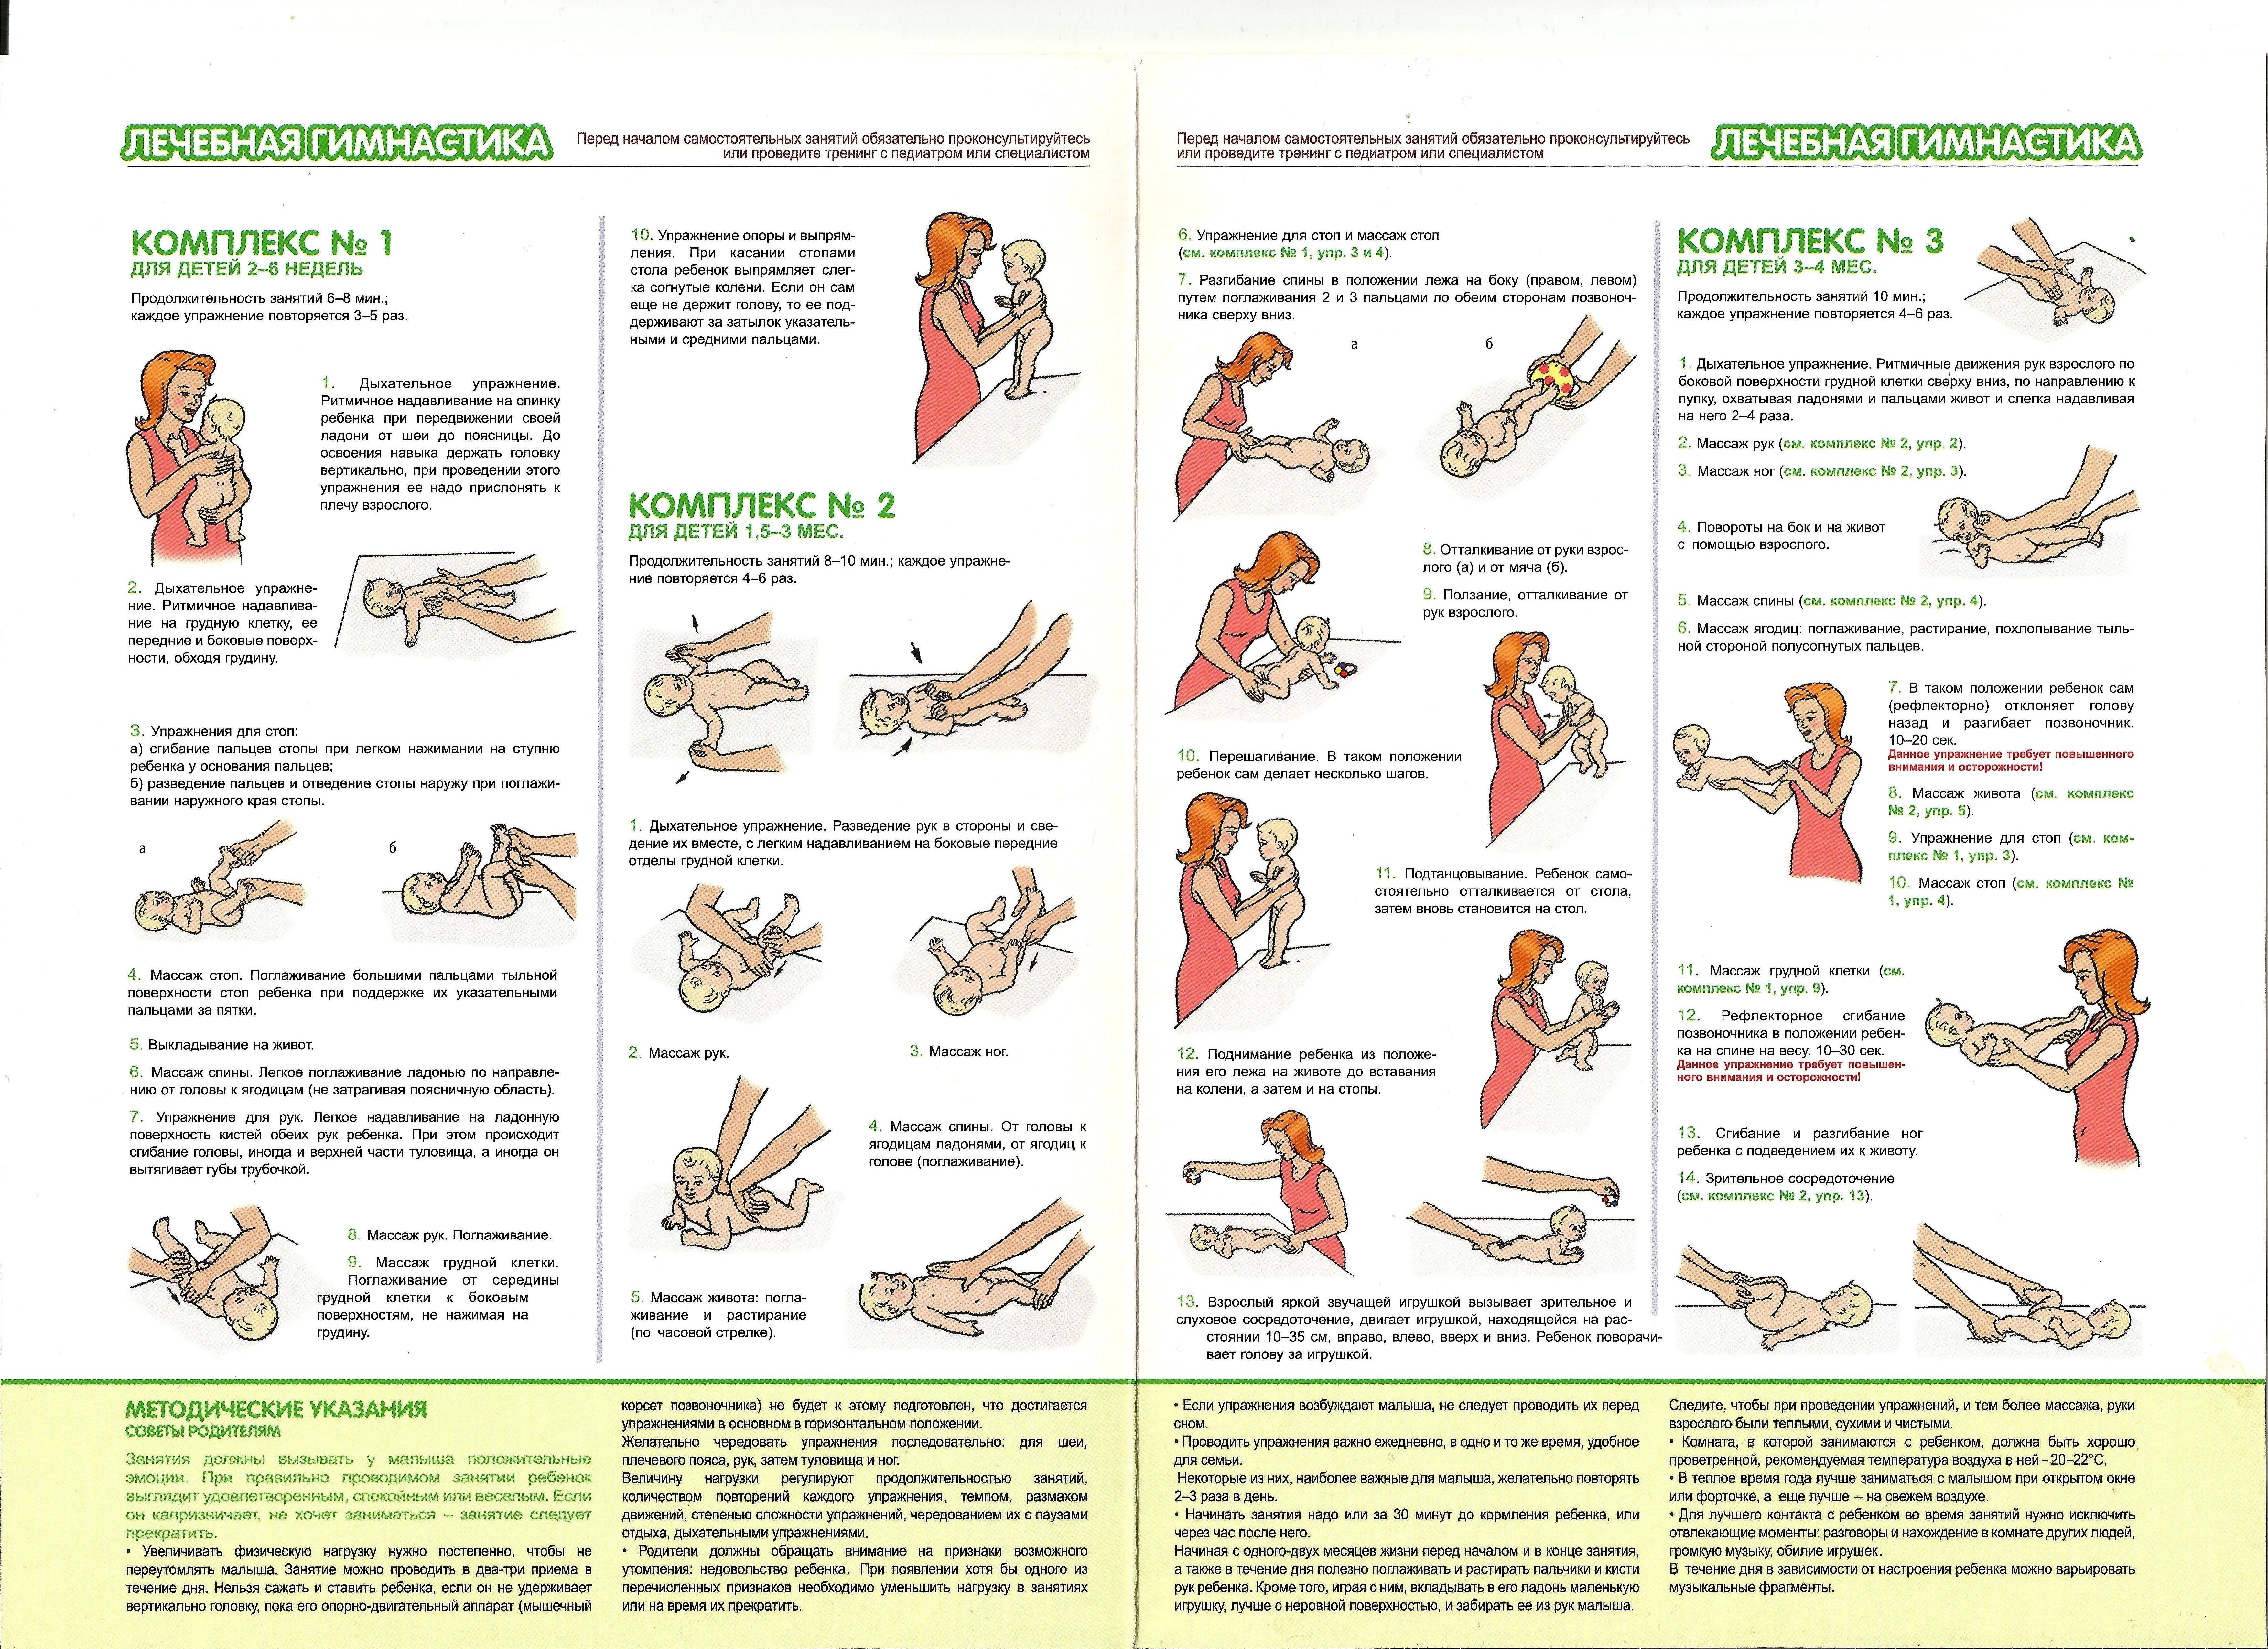 Массаж и гимнастика ребенку в возрасте 3-4 месяцев комплекс упражнений